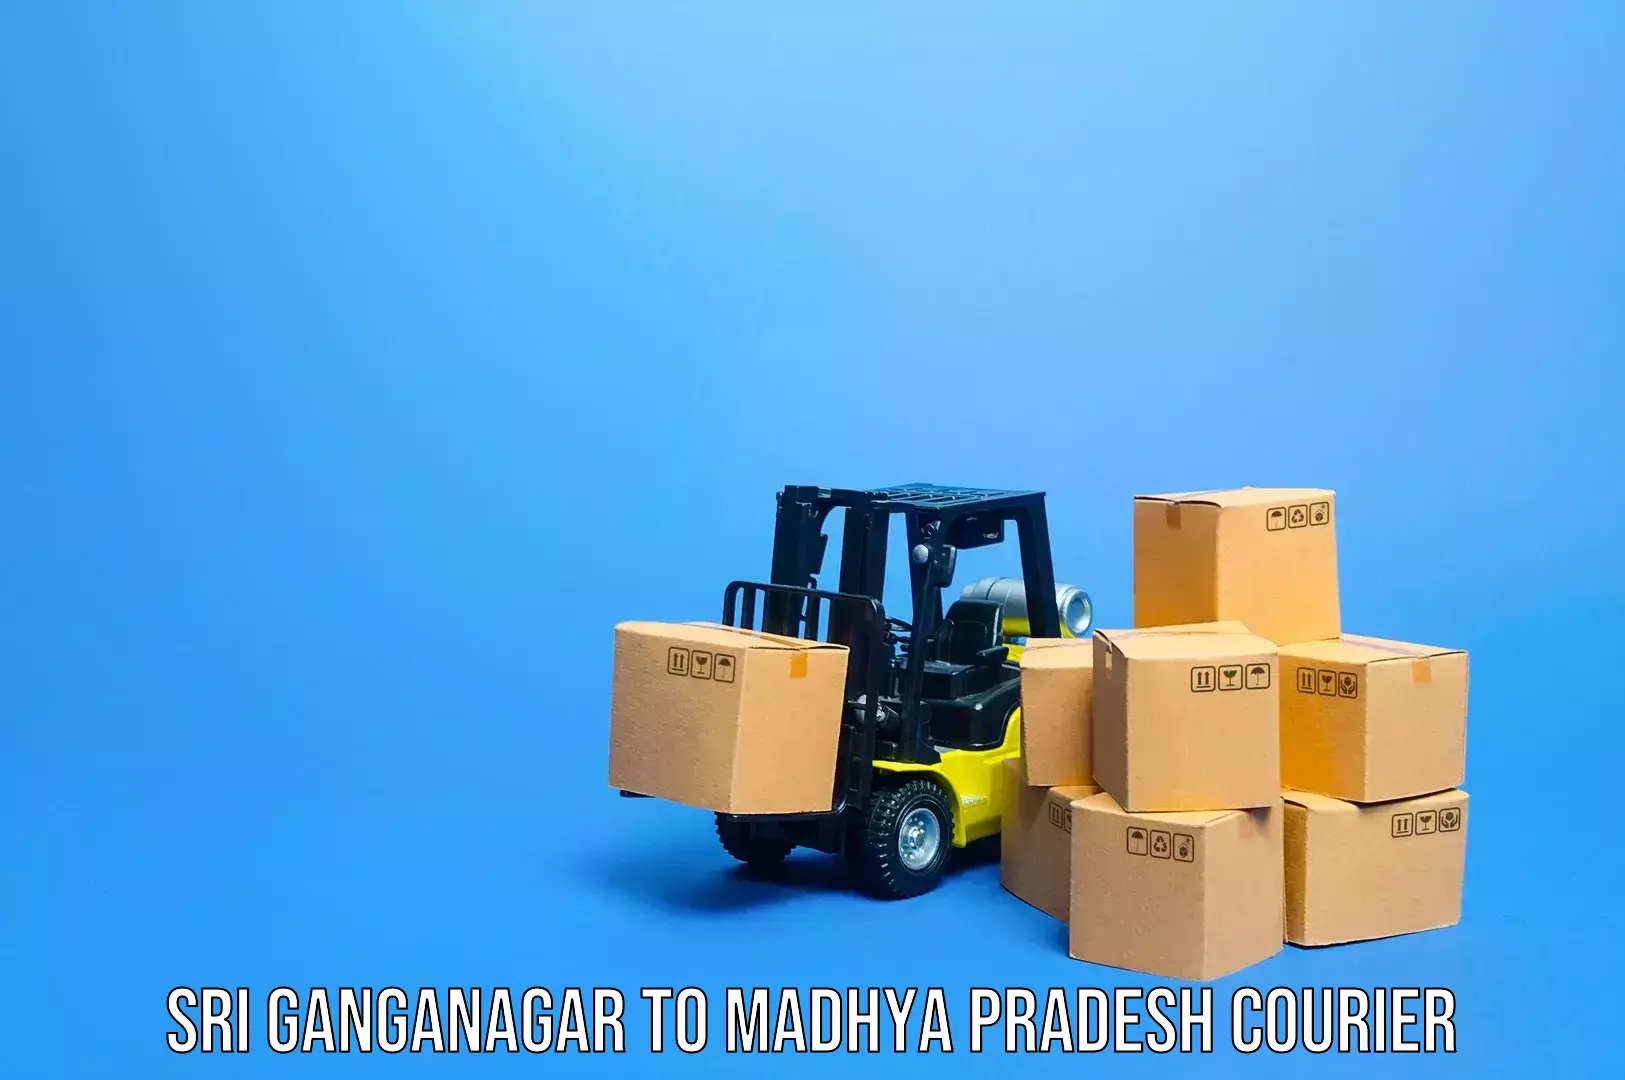 Luggage shipping planner Sri Ganganagar to Chitrangi